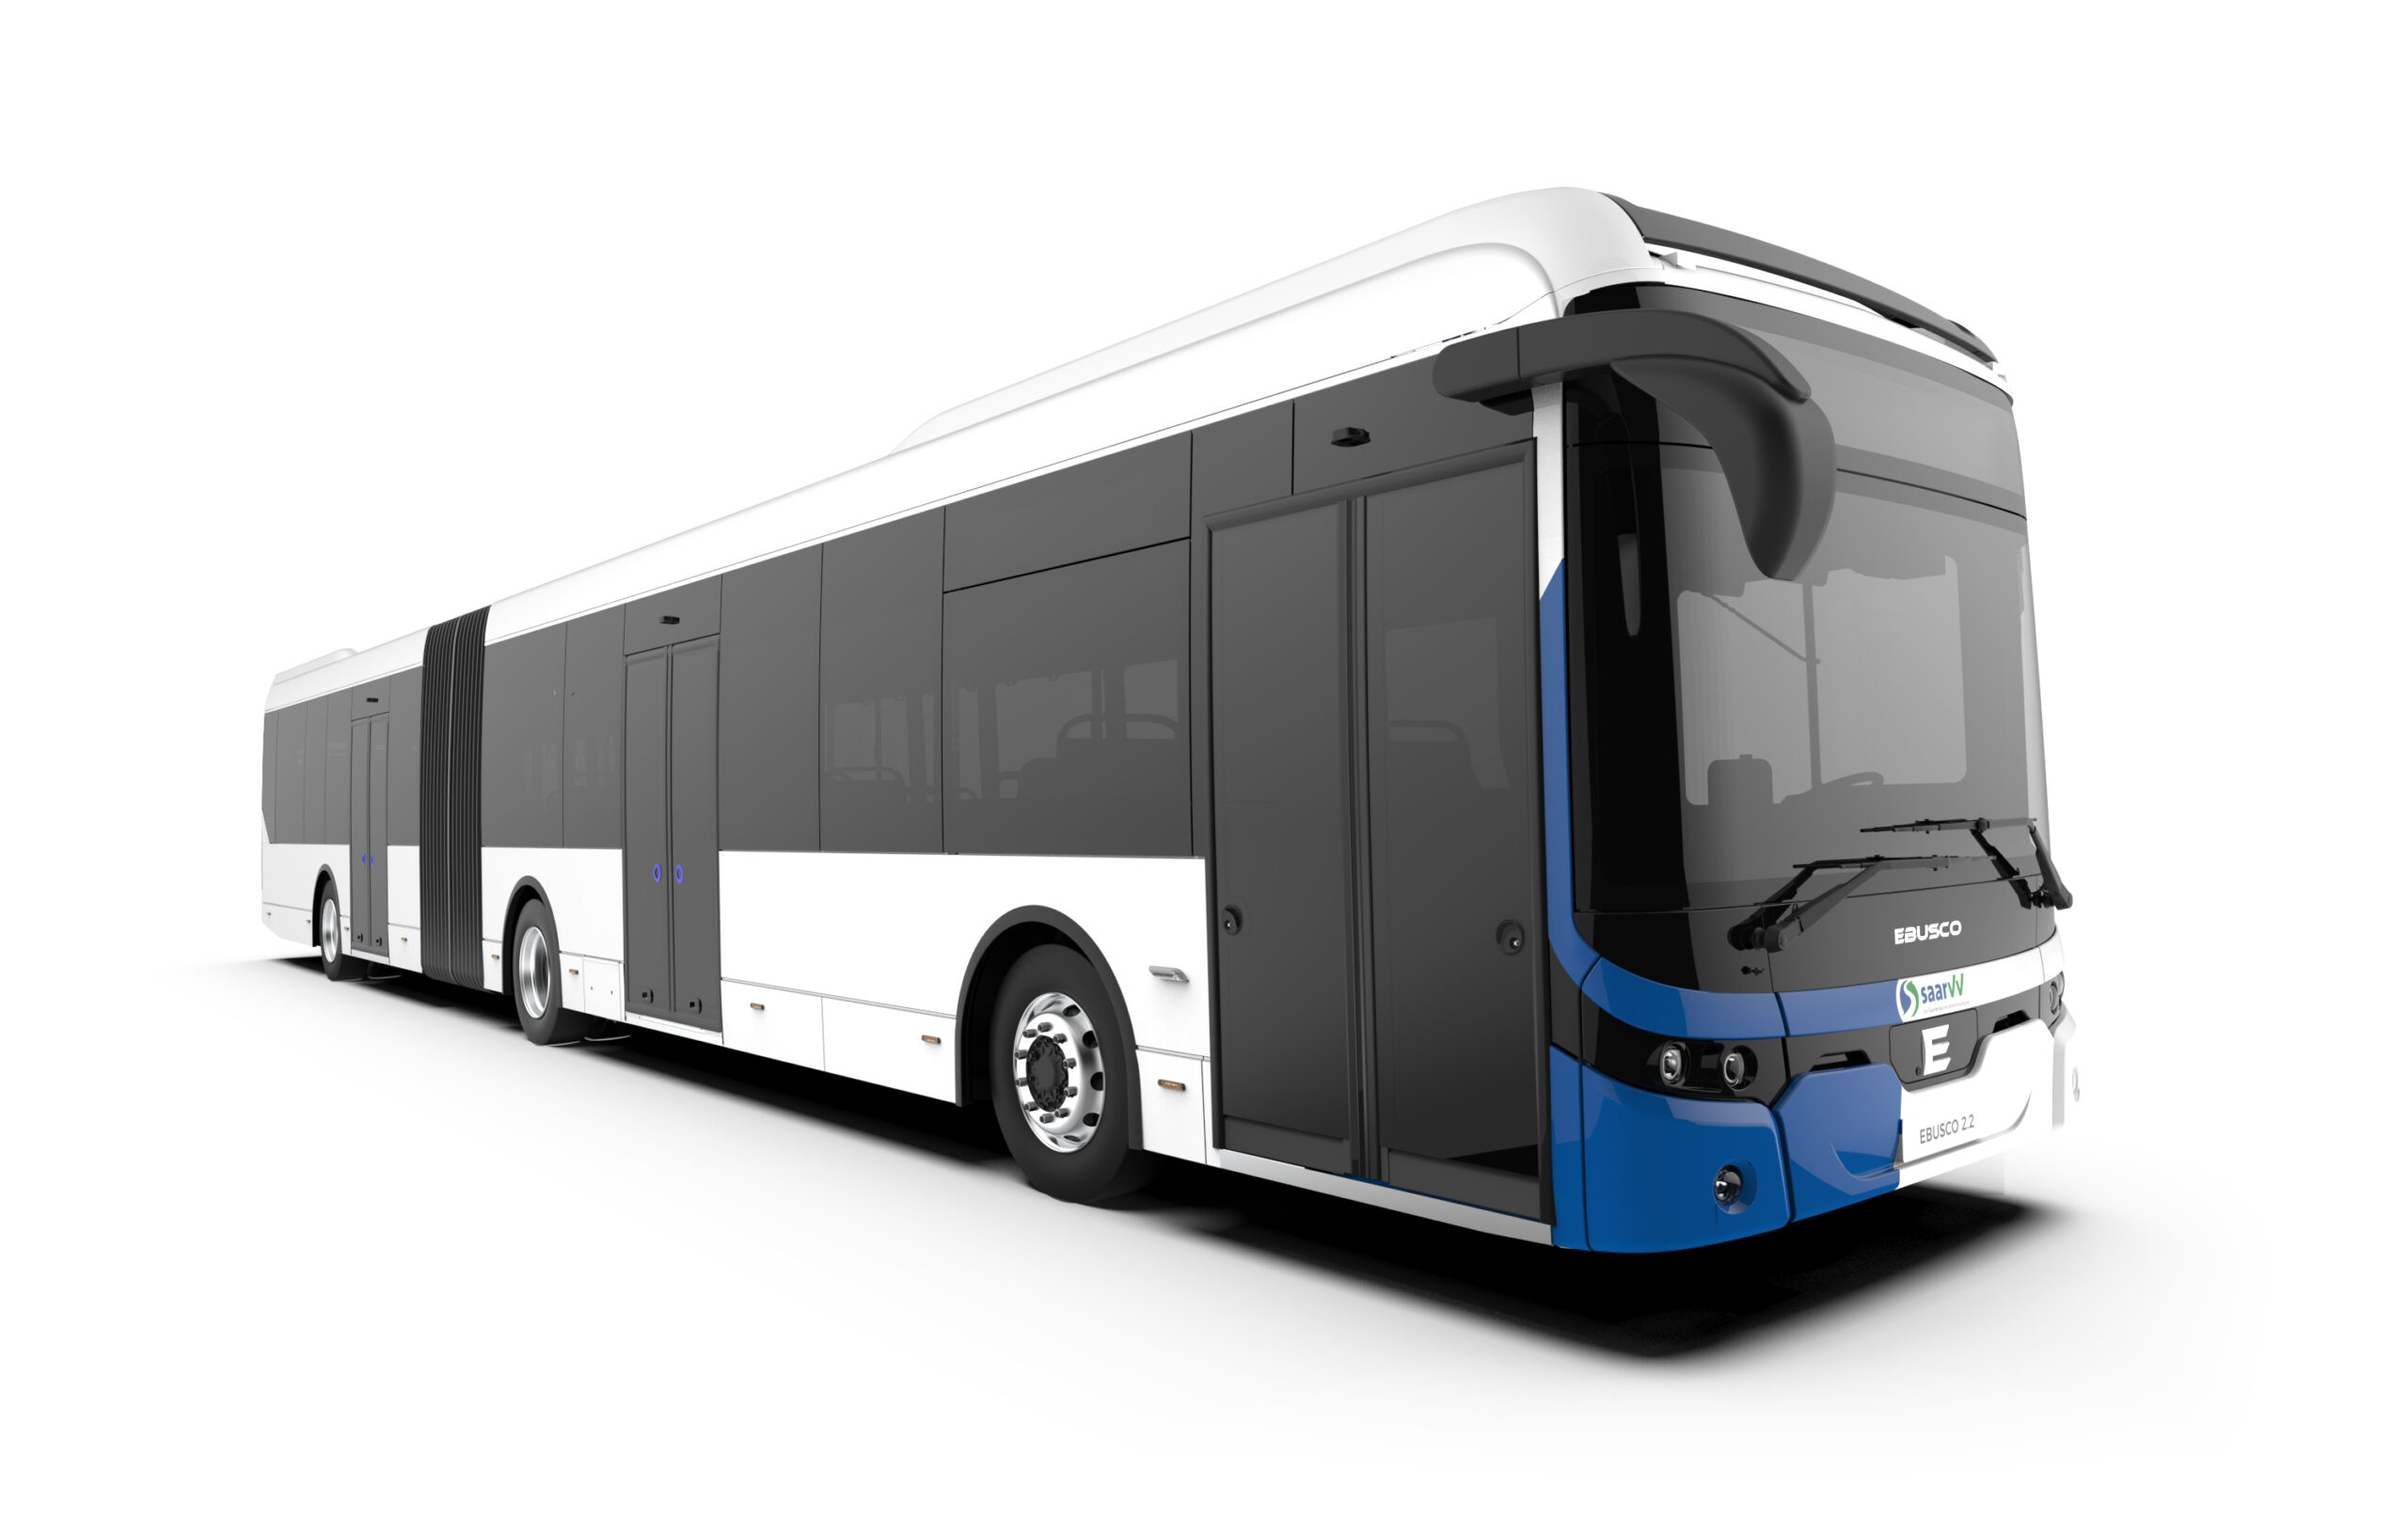 media Gasvormig Bewolkt 20 Ebusco 2.2 bussen voor de regio Saarlouis in Duitsland - Ebusco®